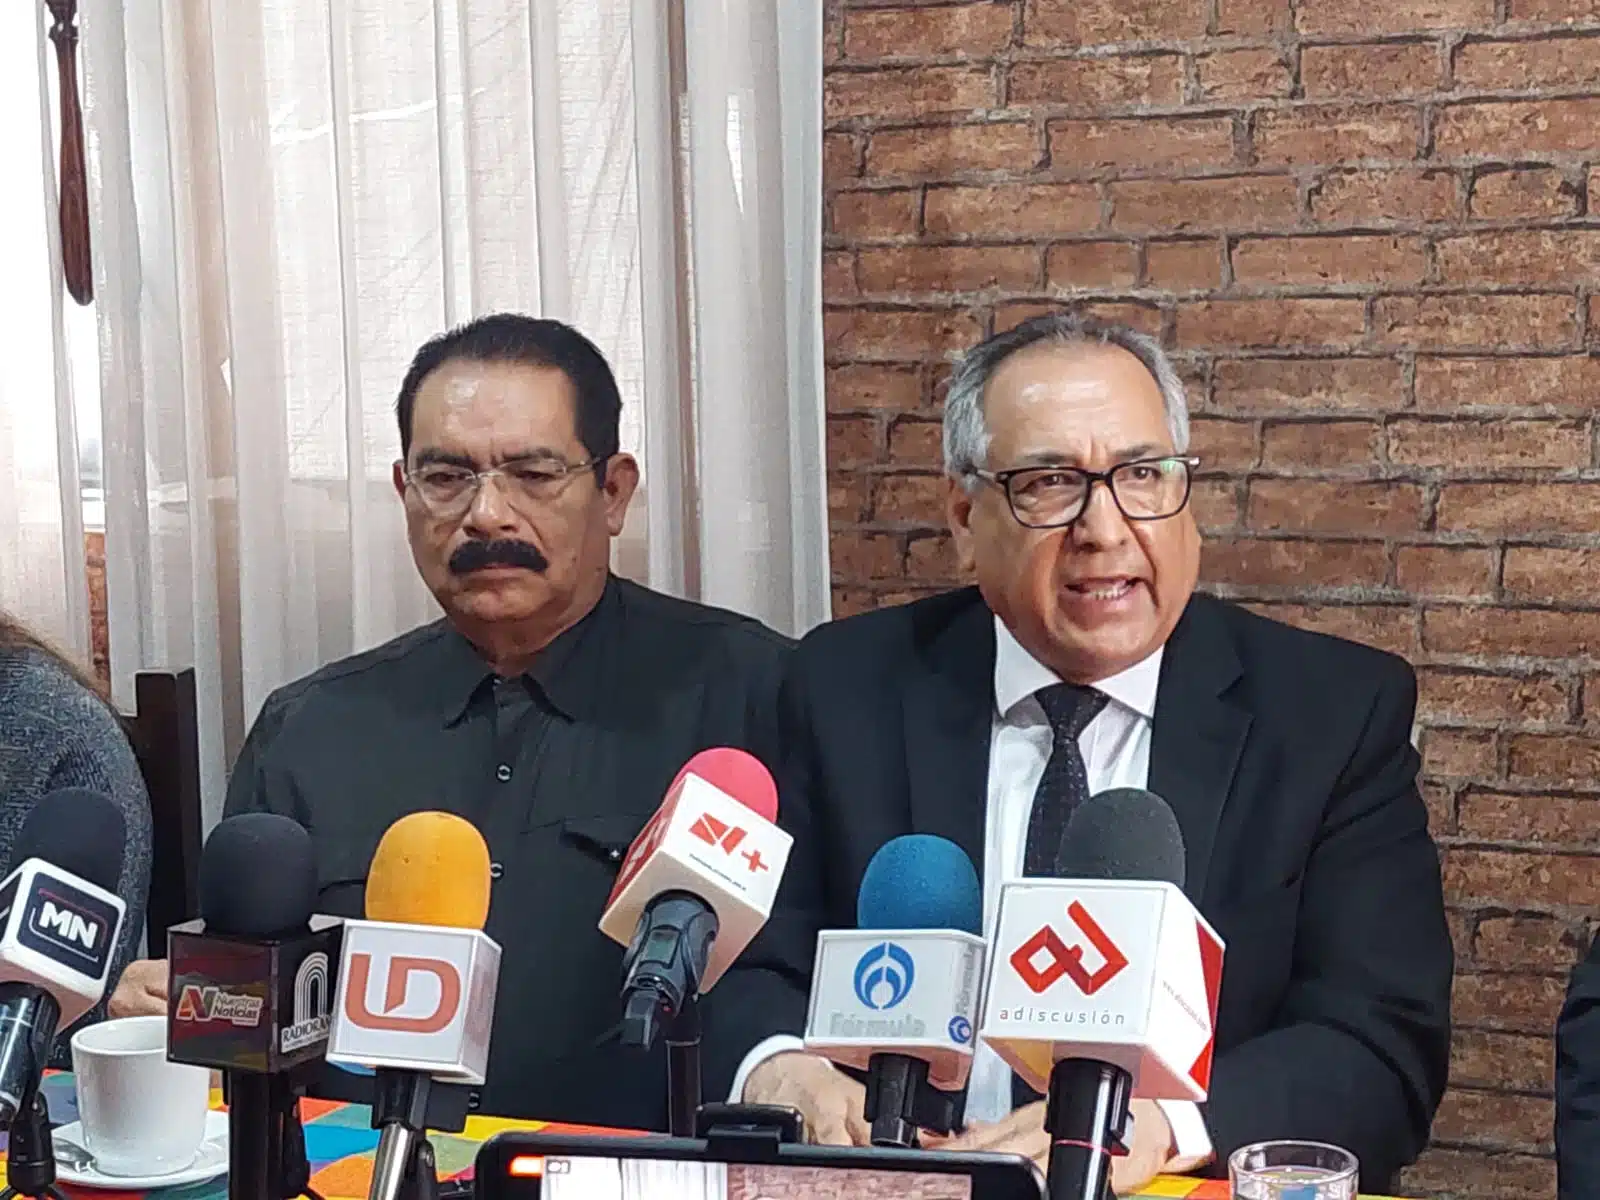 Ambrocio Chávez Chávez en conferencia de prensa con los medios de comunicación en Culiacán